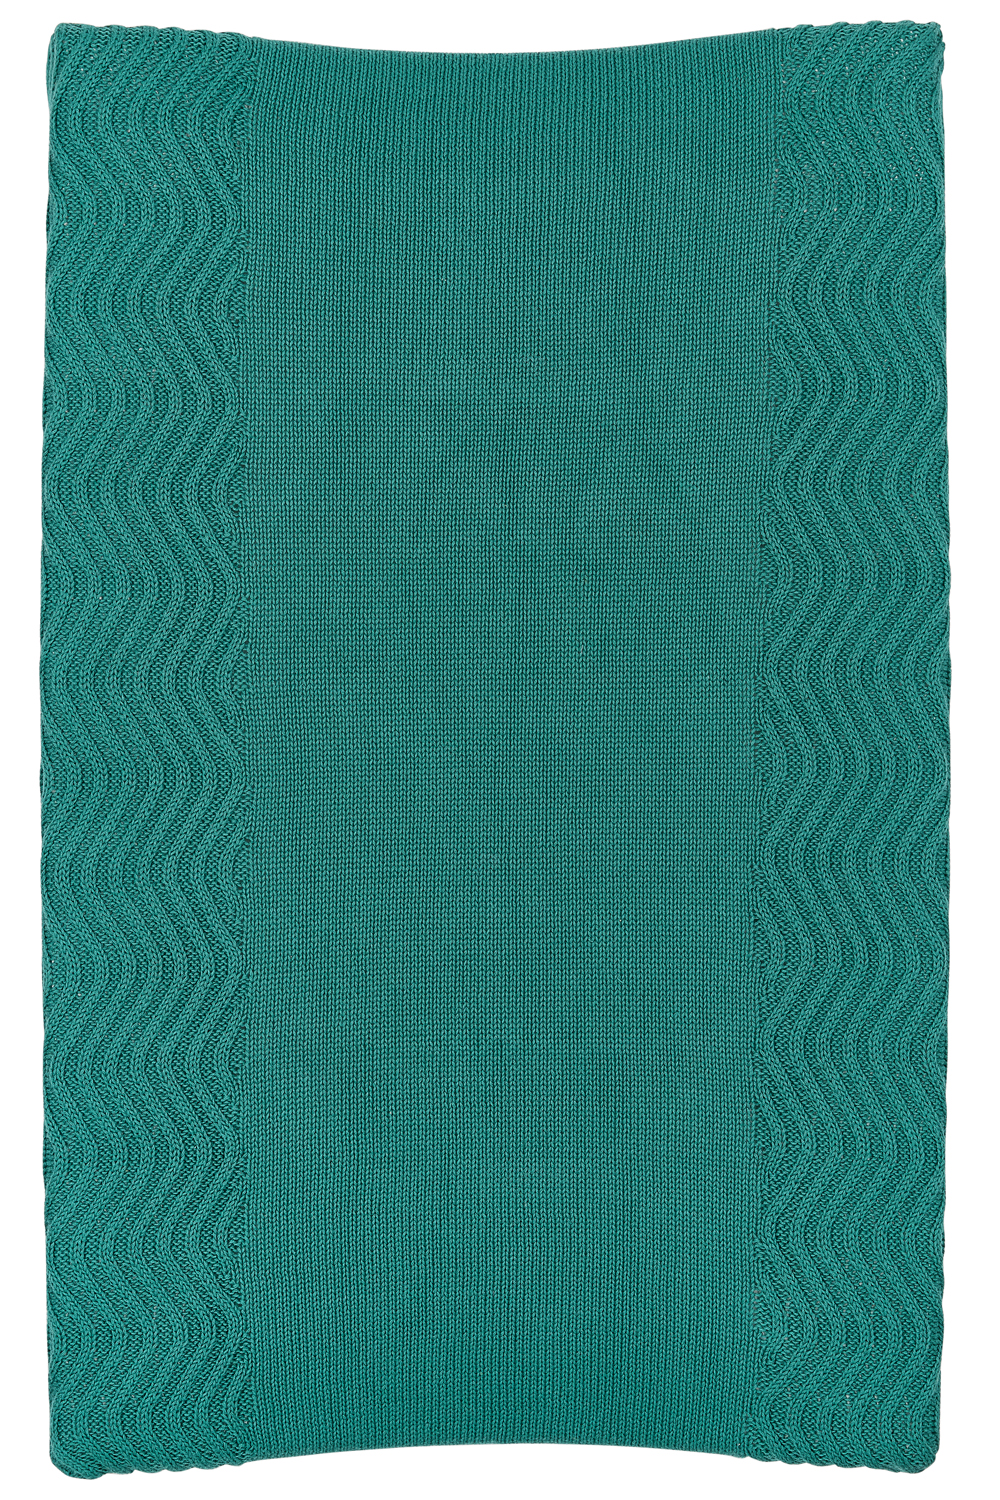 Aankleedkussenhoes Waves - emerald green - 50x70cm